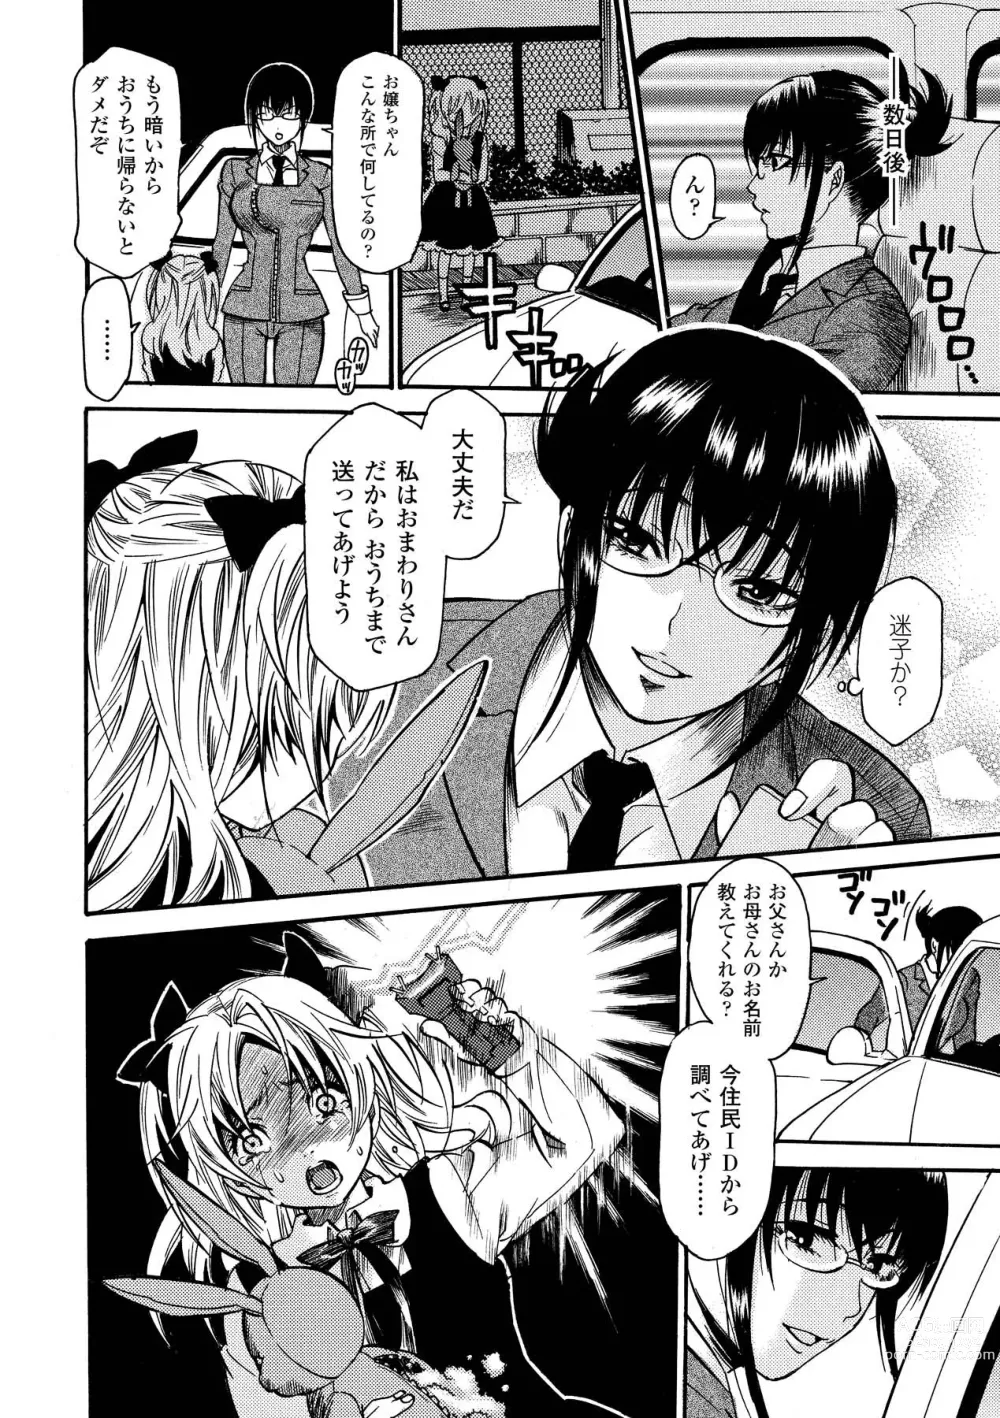 Page 8 of manga Aigan Masochist